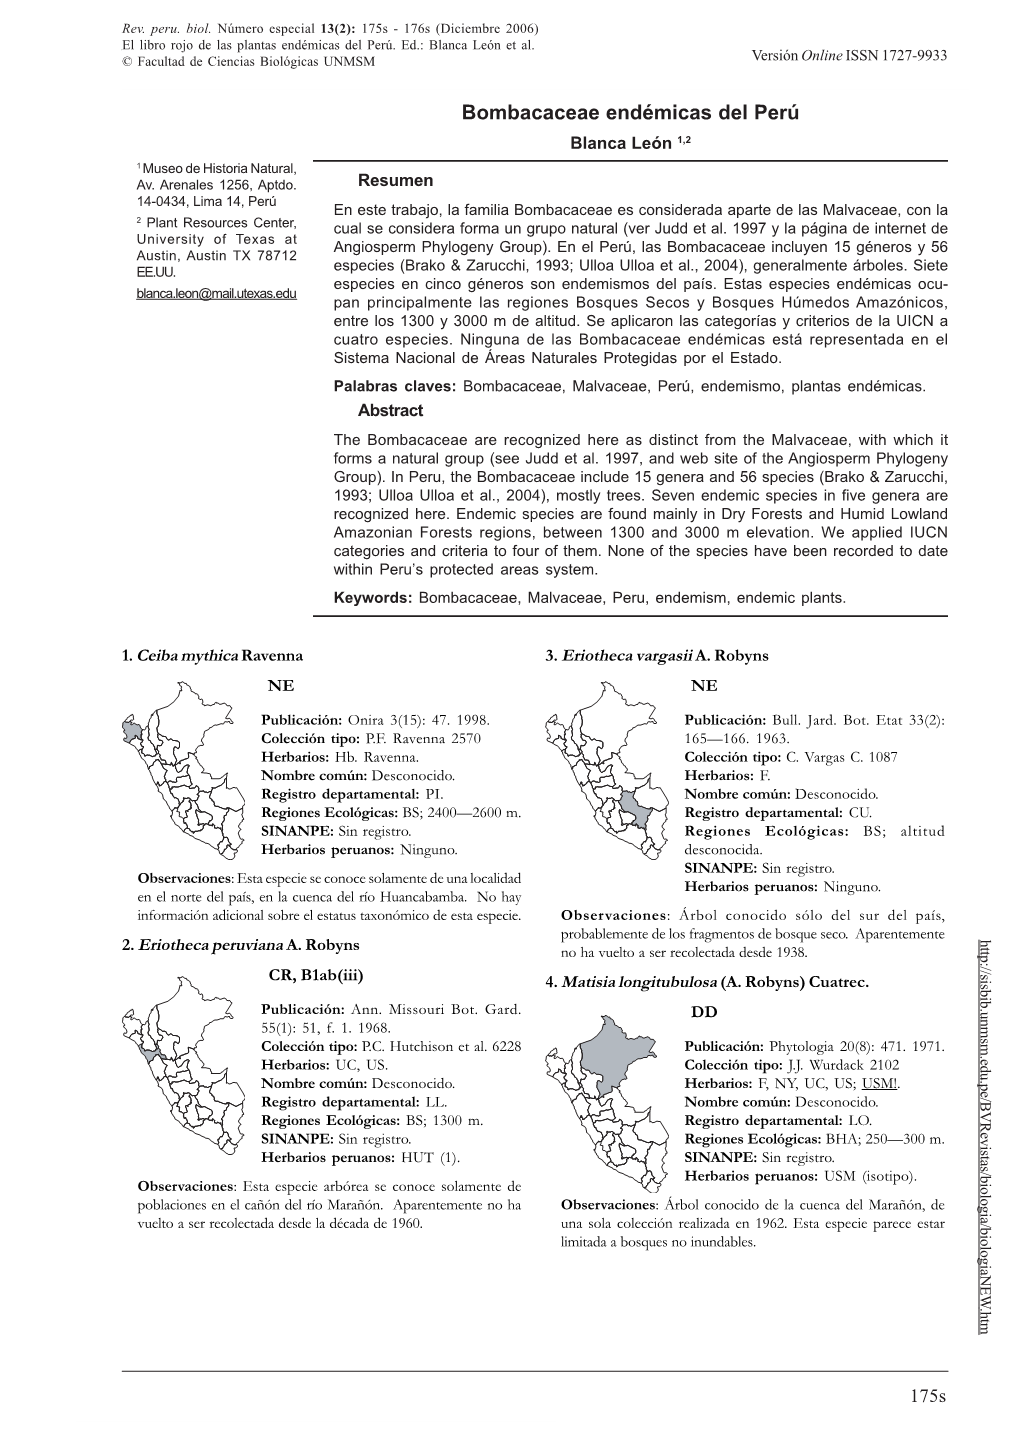 BOMBACACEAE ENDÉMICAS DEL PERÚ © Facultad De Ciencias Biológicas UNMSM Versión Online ISSN 1727-9933